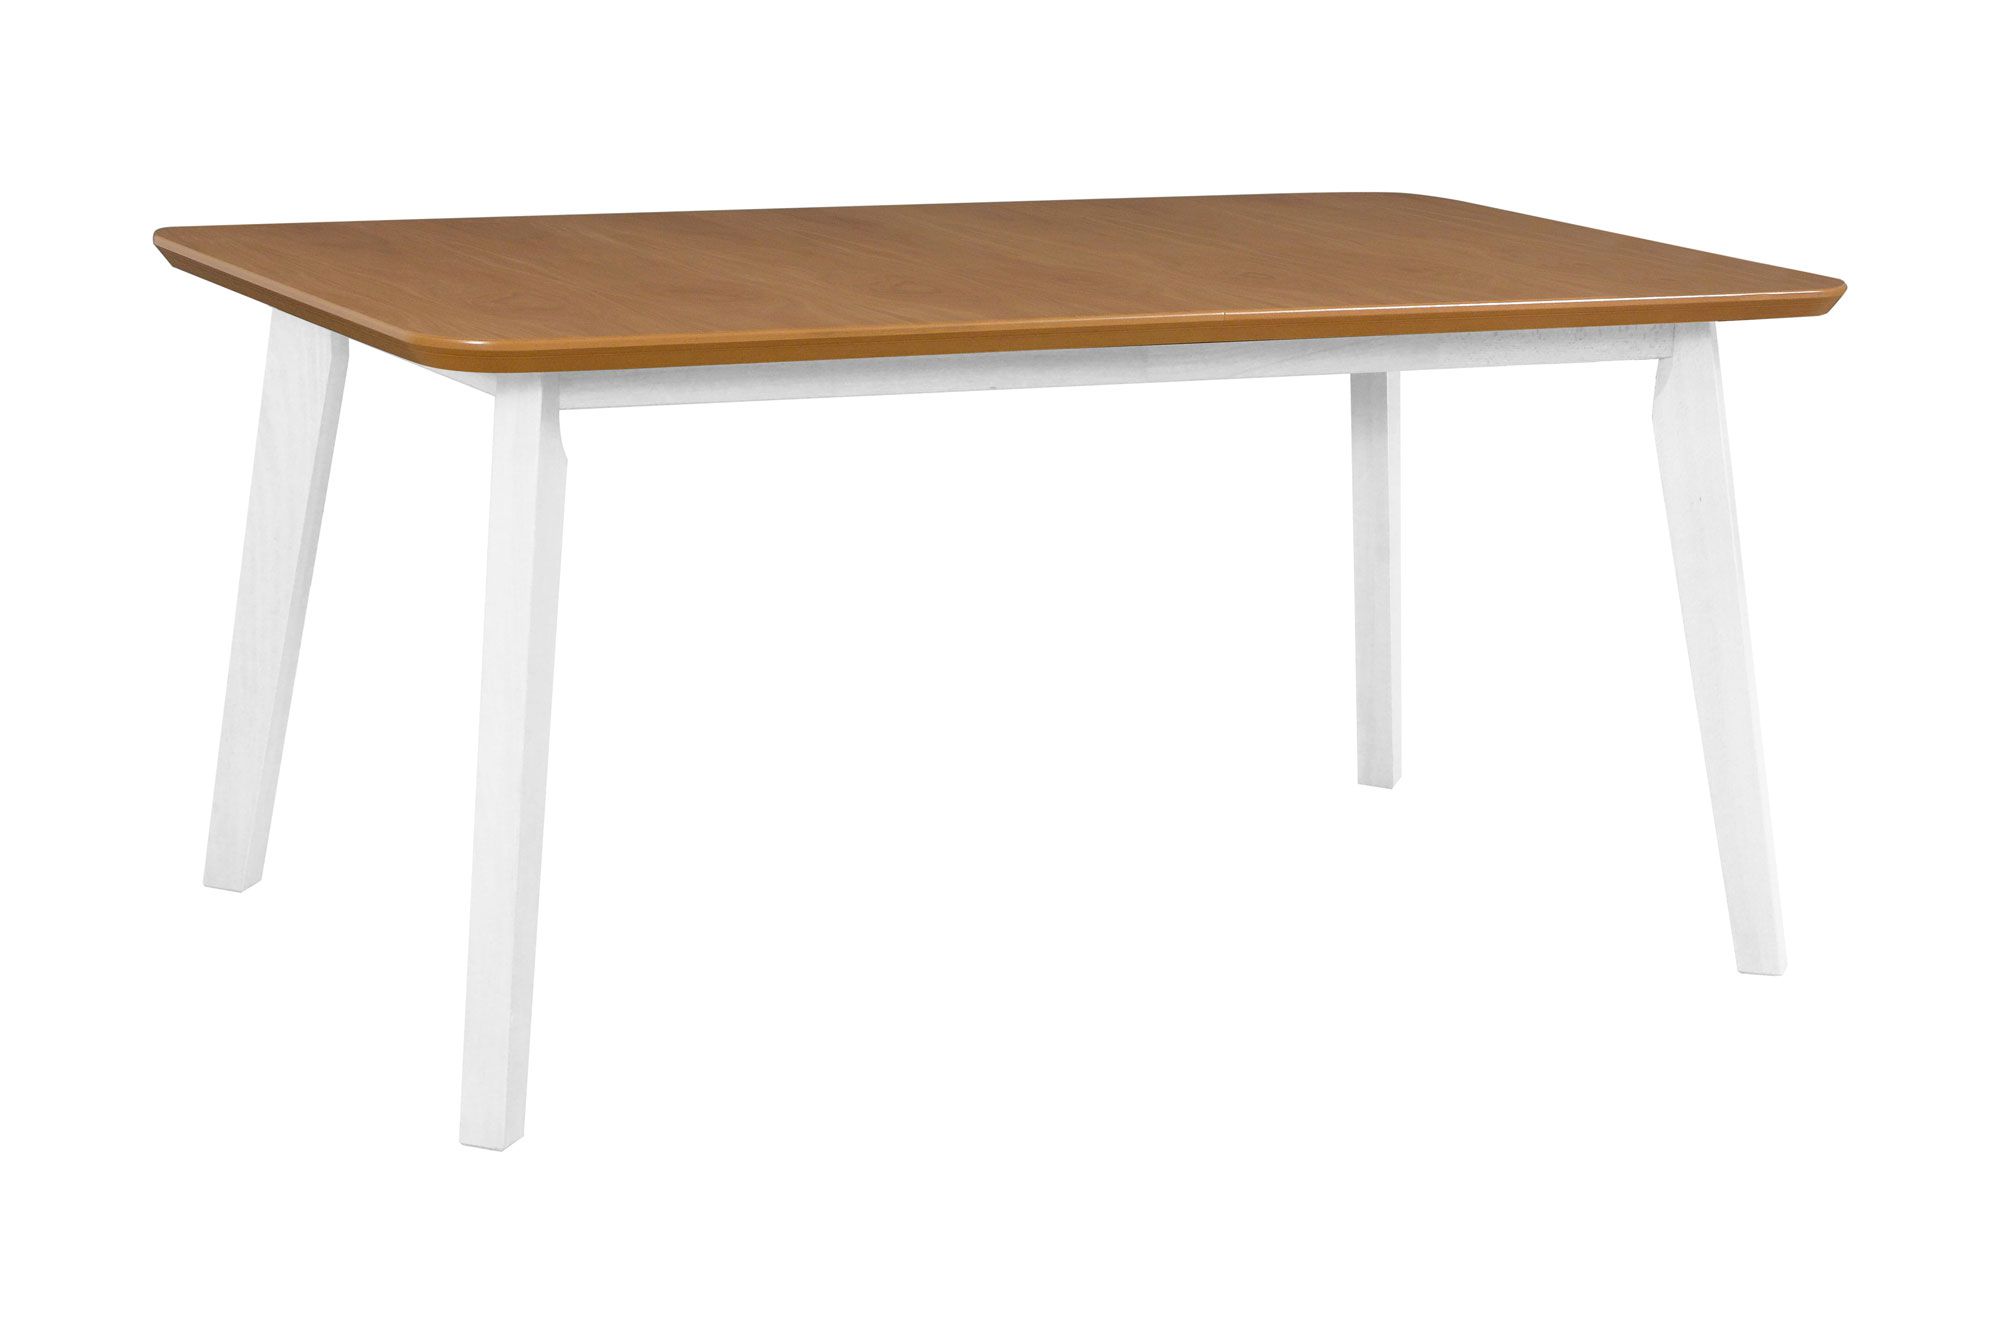 Großer Esszimmertisch KLAVS  in Weiß/Eiche, Abmessung 90 x 160/200 (B x T), Tischplatte furniert, stabile Holzfüße, hohe Festigkeit, schöne Maserung